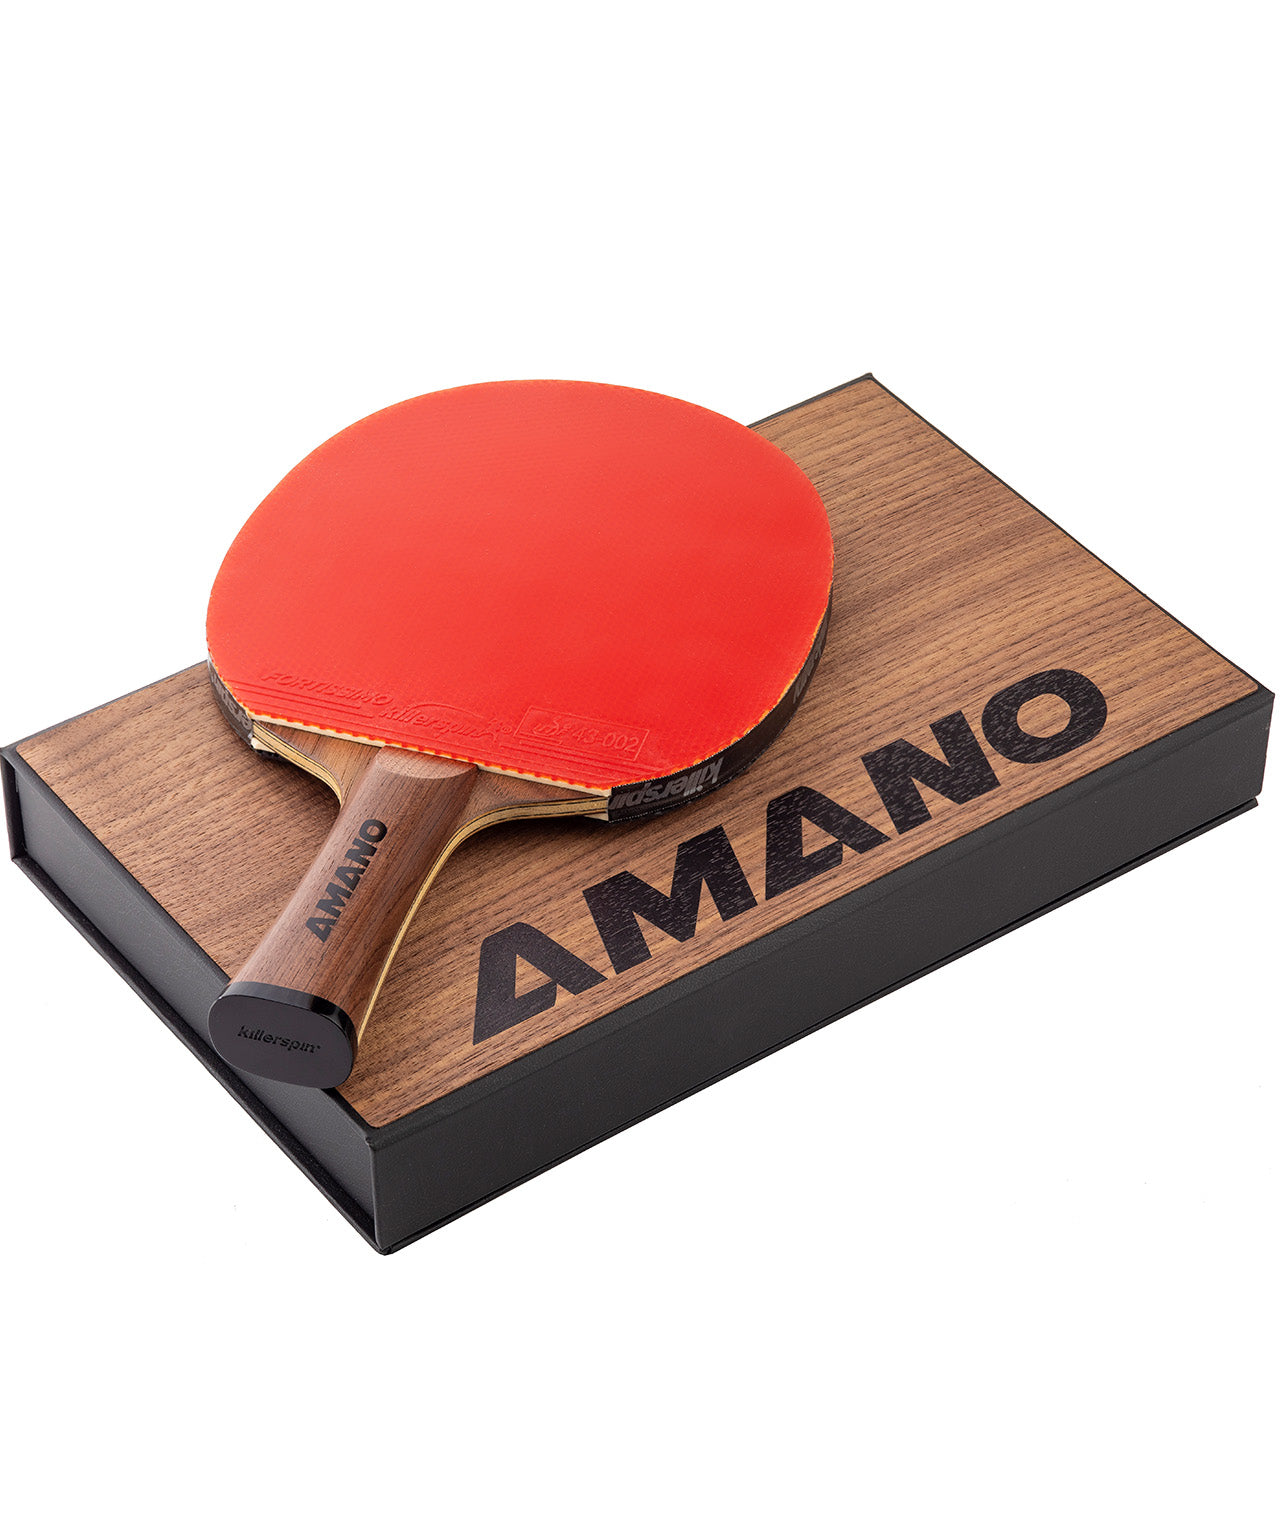 killerspin table tennis ping pong paddle - Amano